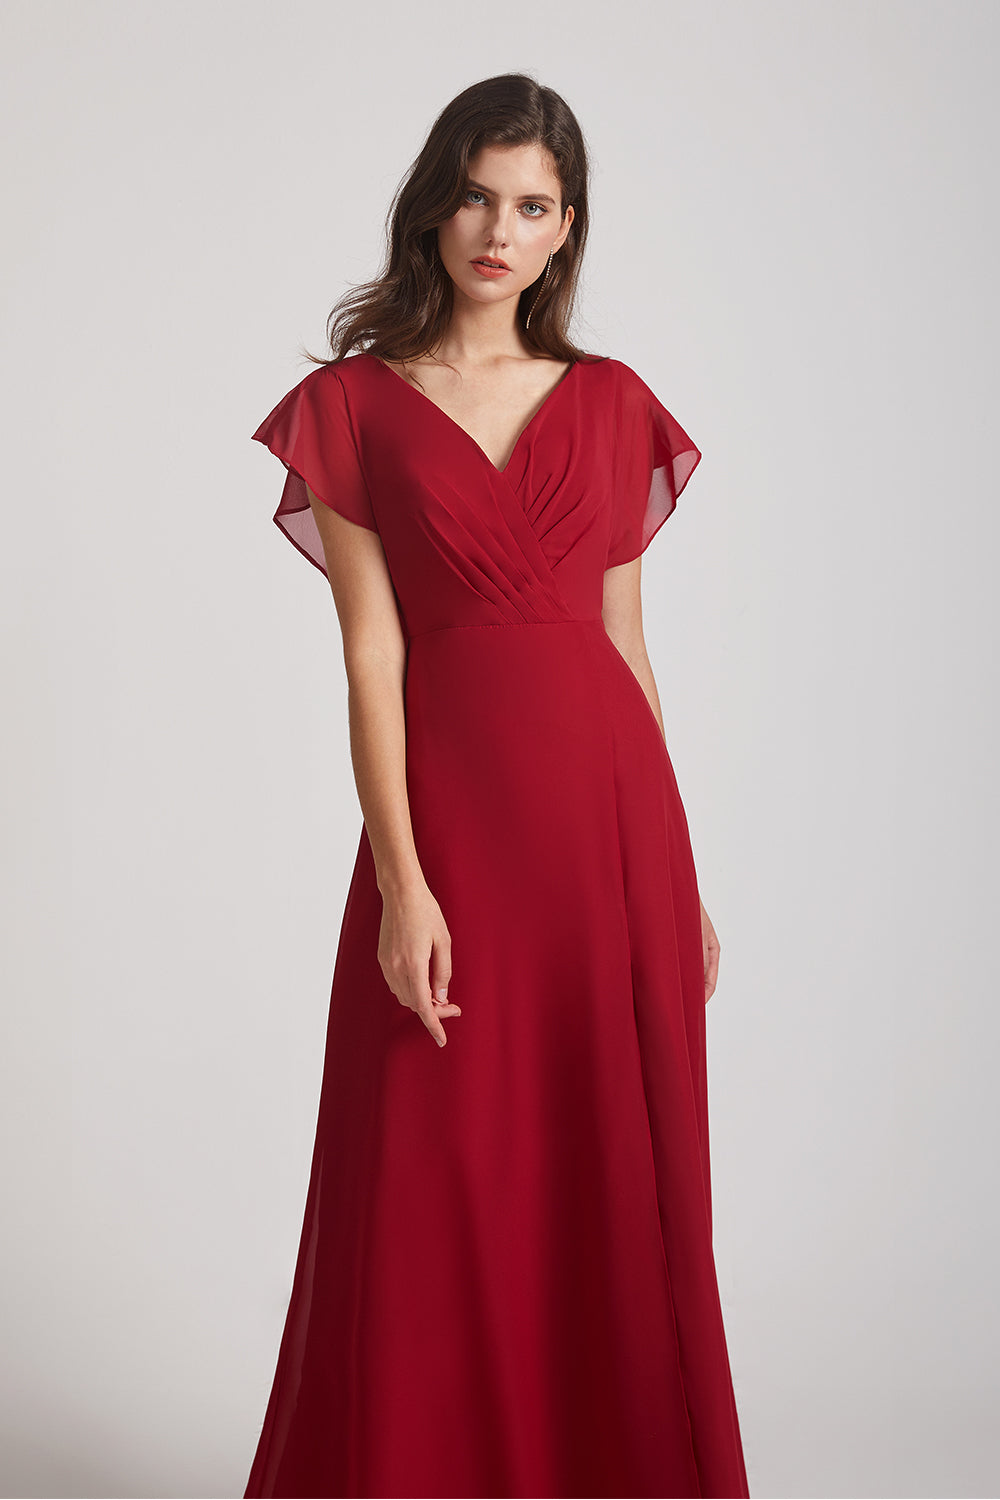 Alfa Bridal Dark Red V-Neck Chiffon Long Backless Bridesmaid Dresses with Side Slit (AF0071)